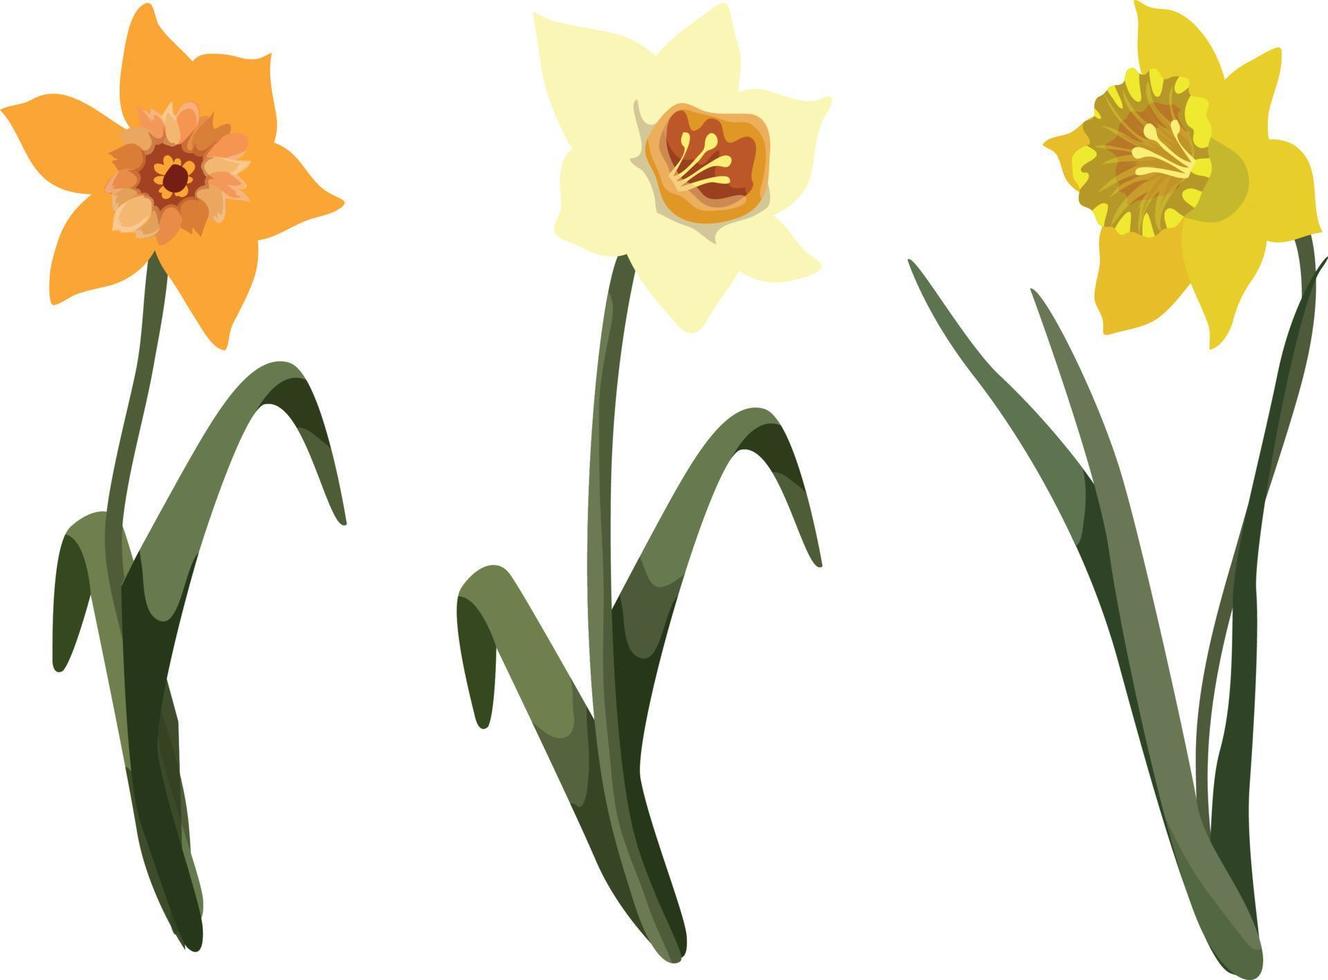 plante à fleurs de printemps jonquille ou jonquille avec fleur jaune et ensemble de vecteurs de tige sans feuilles vecteur